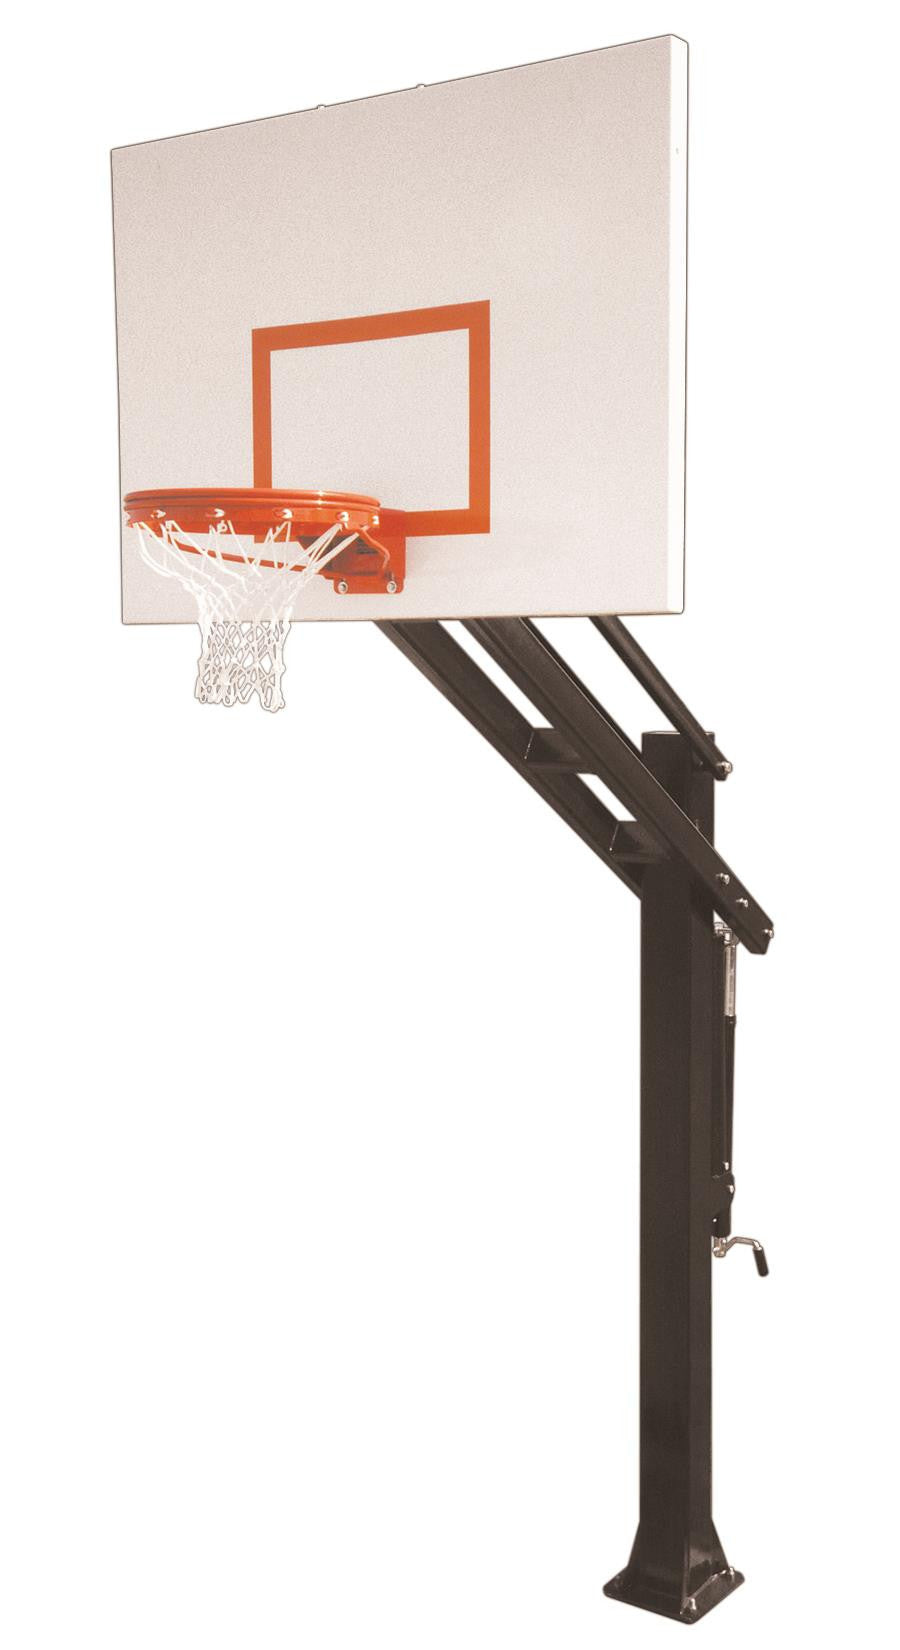 First Team Titan Playground In Ground Outdoor Adjustable Basketball Hoop 60 inch Steel